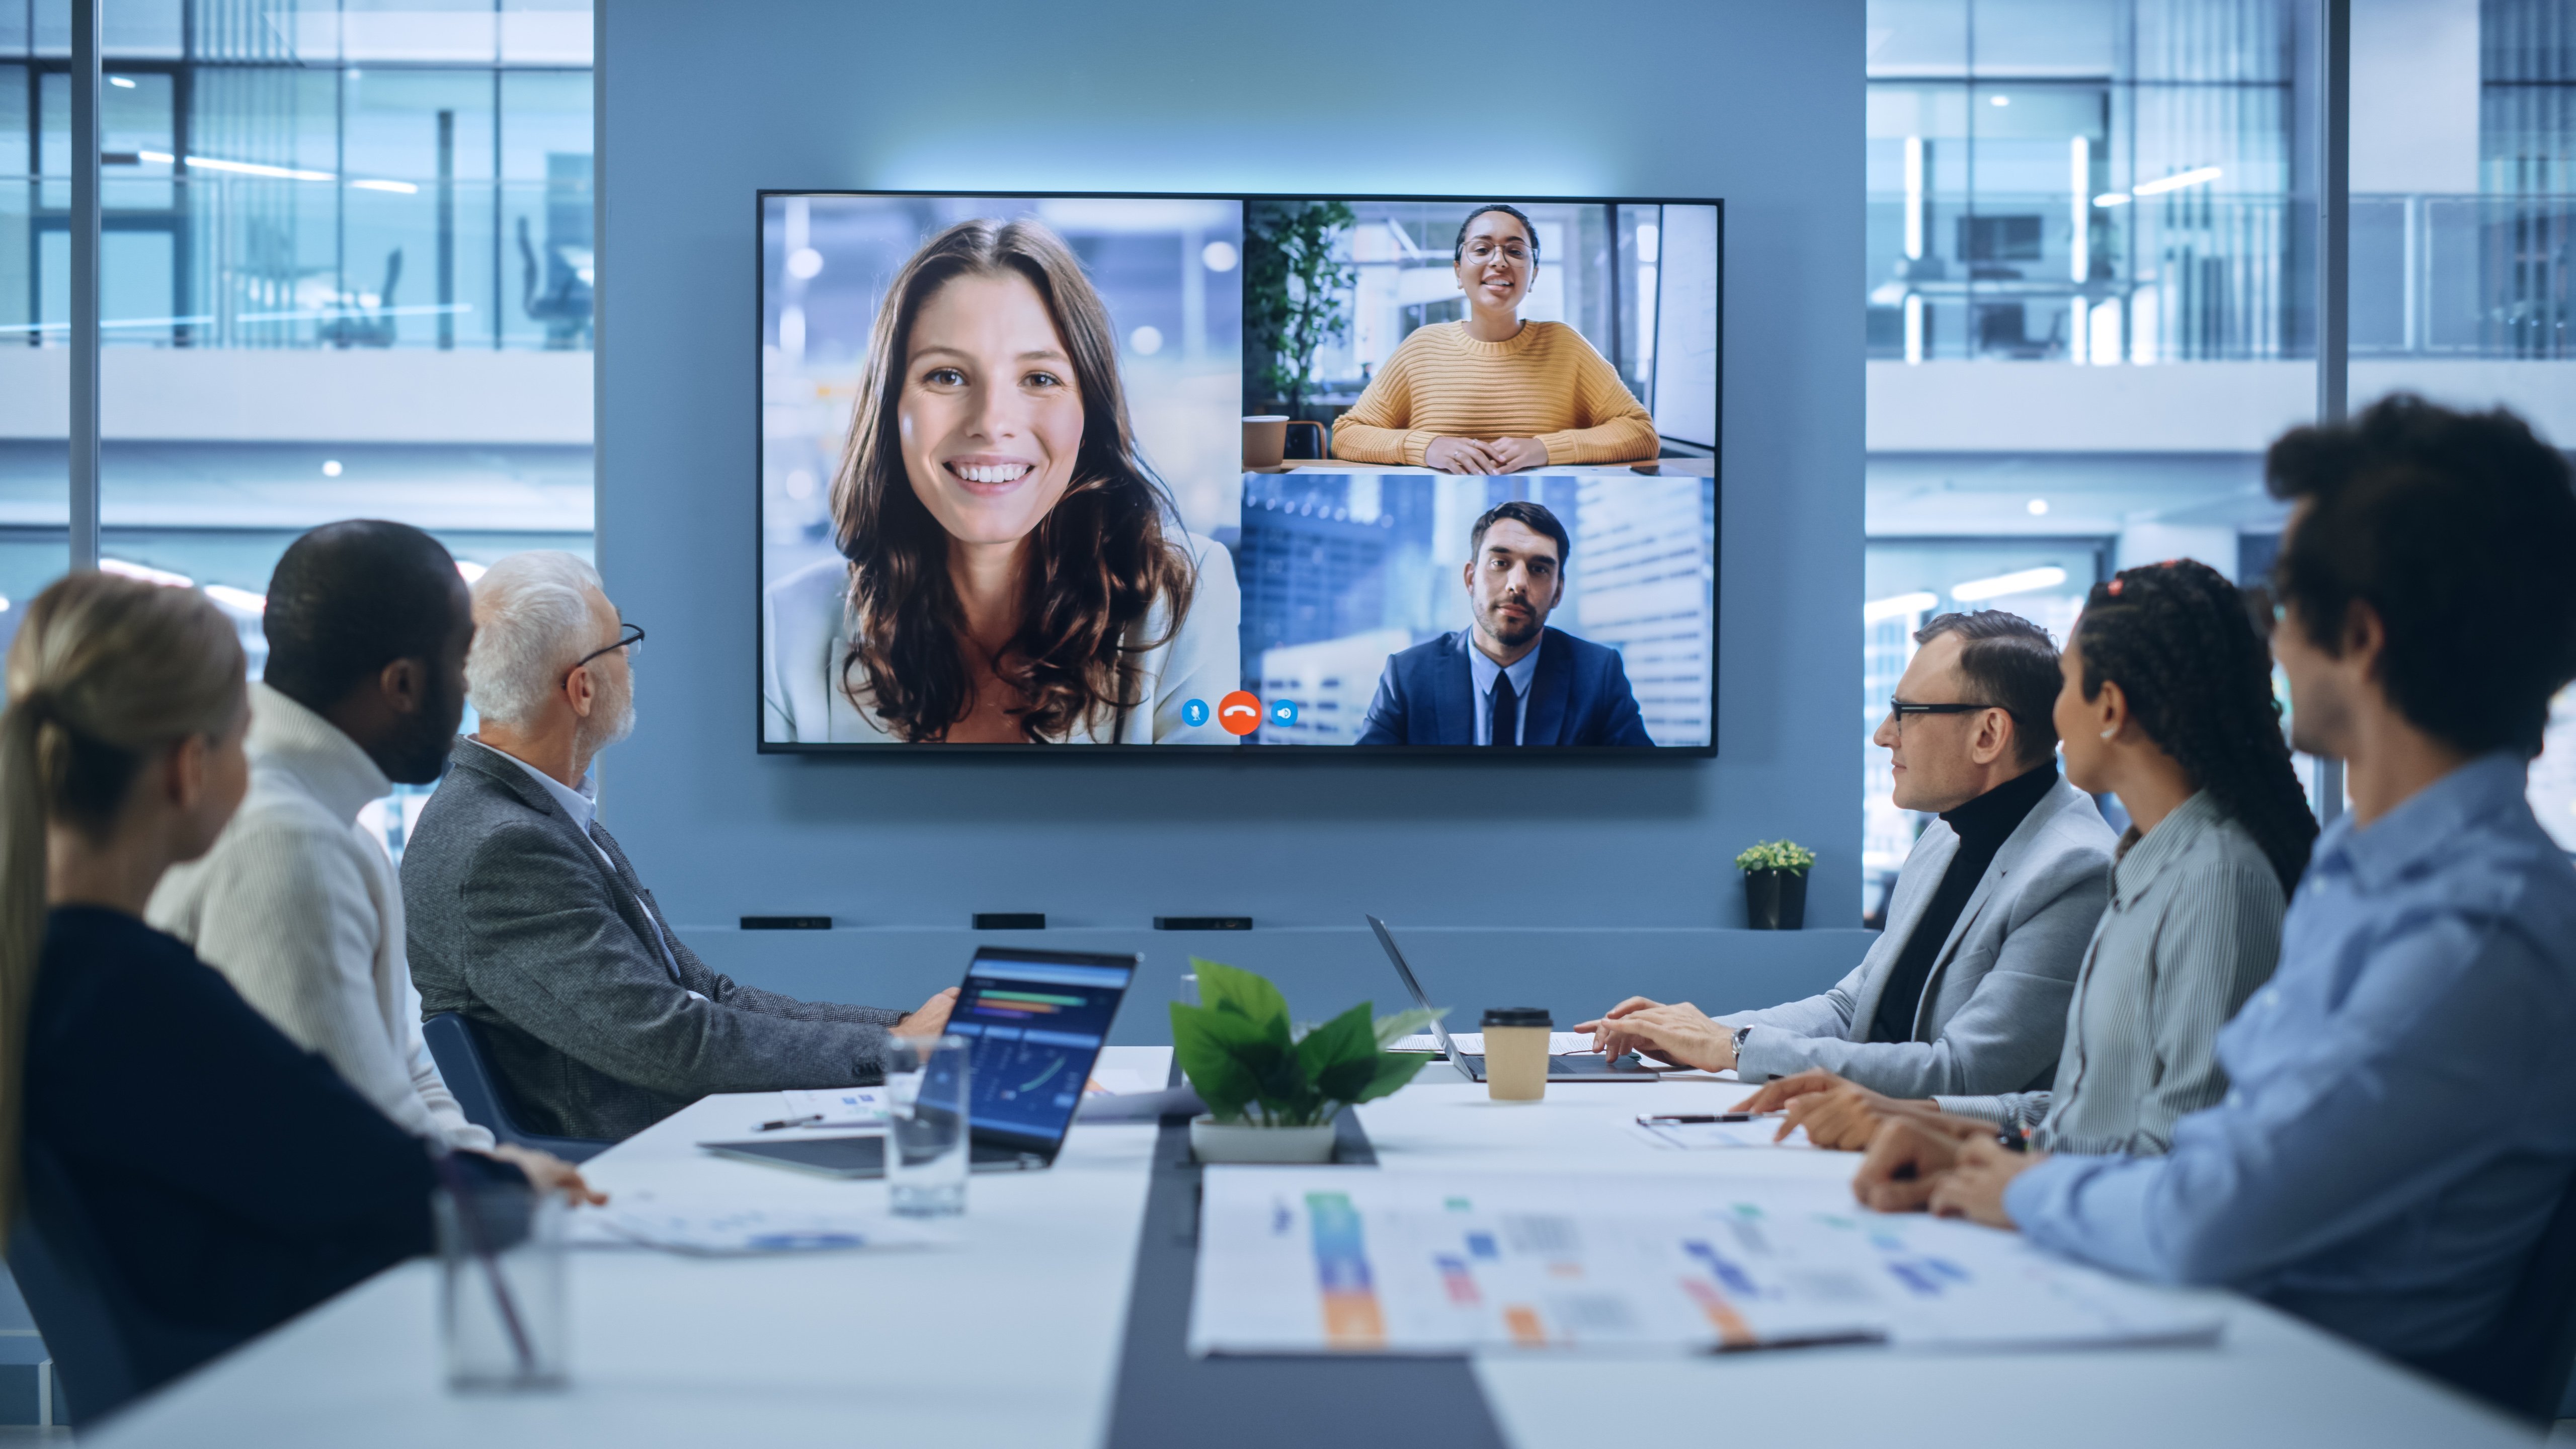 Réunion en salle de réunion avec vidéoconférence 